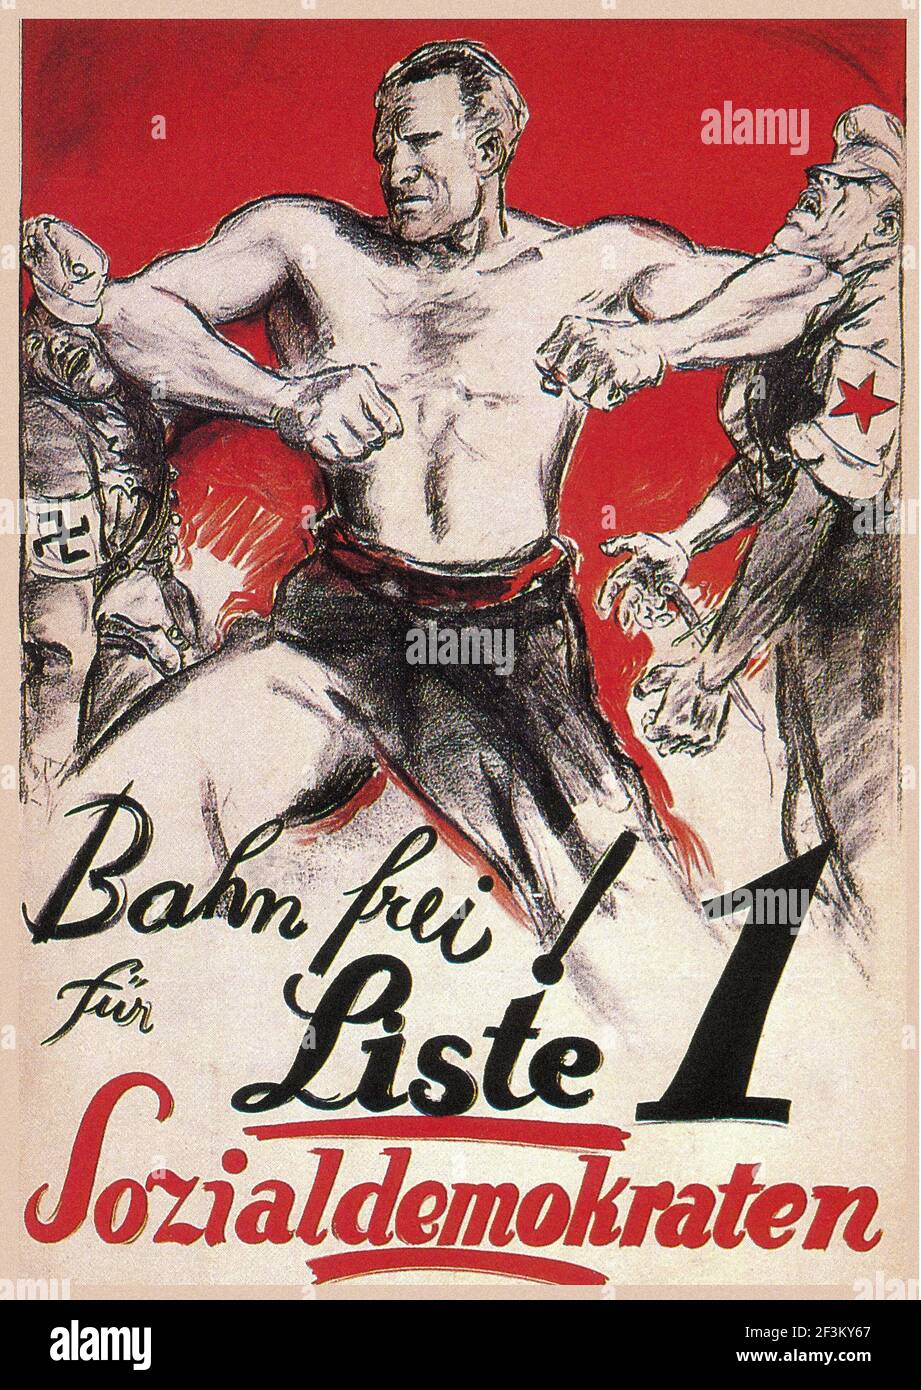 Affiche de propagande allemande vintage. Votez sociaux-démocrates. Allemagne, années 1930 Banque D'Images